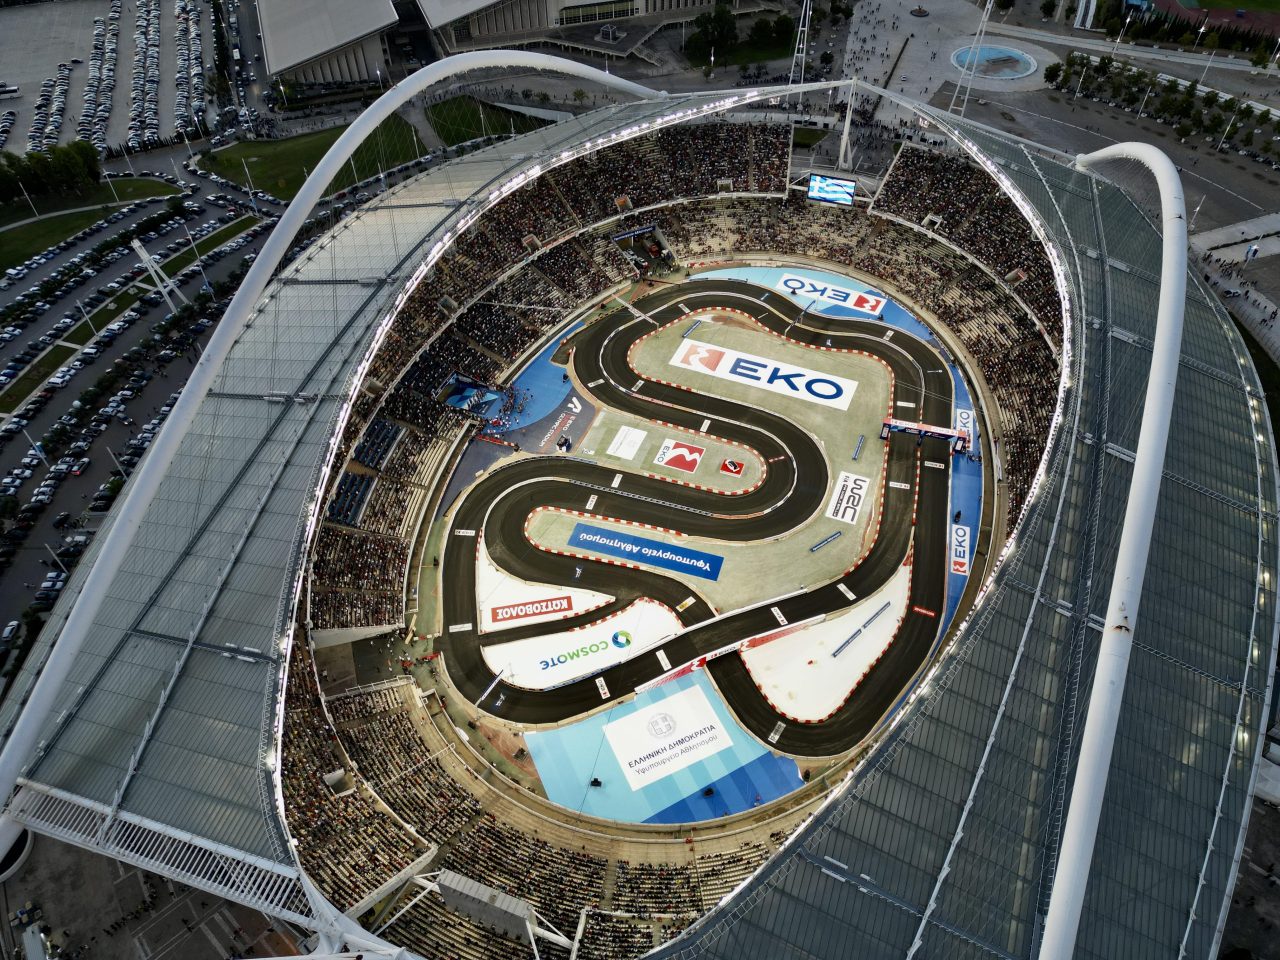 Από 7 – 10 Σεπτεμβρίου του 2023 θα διεξαχθεί το Ράλι Ακρόπολις, θα αποτελέσει τον 10ο γύρο του Παγκόσμιου Πρωταθλήματος Ράλι της FIA.